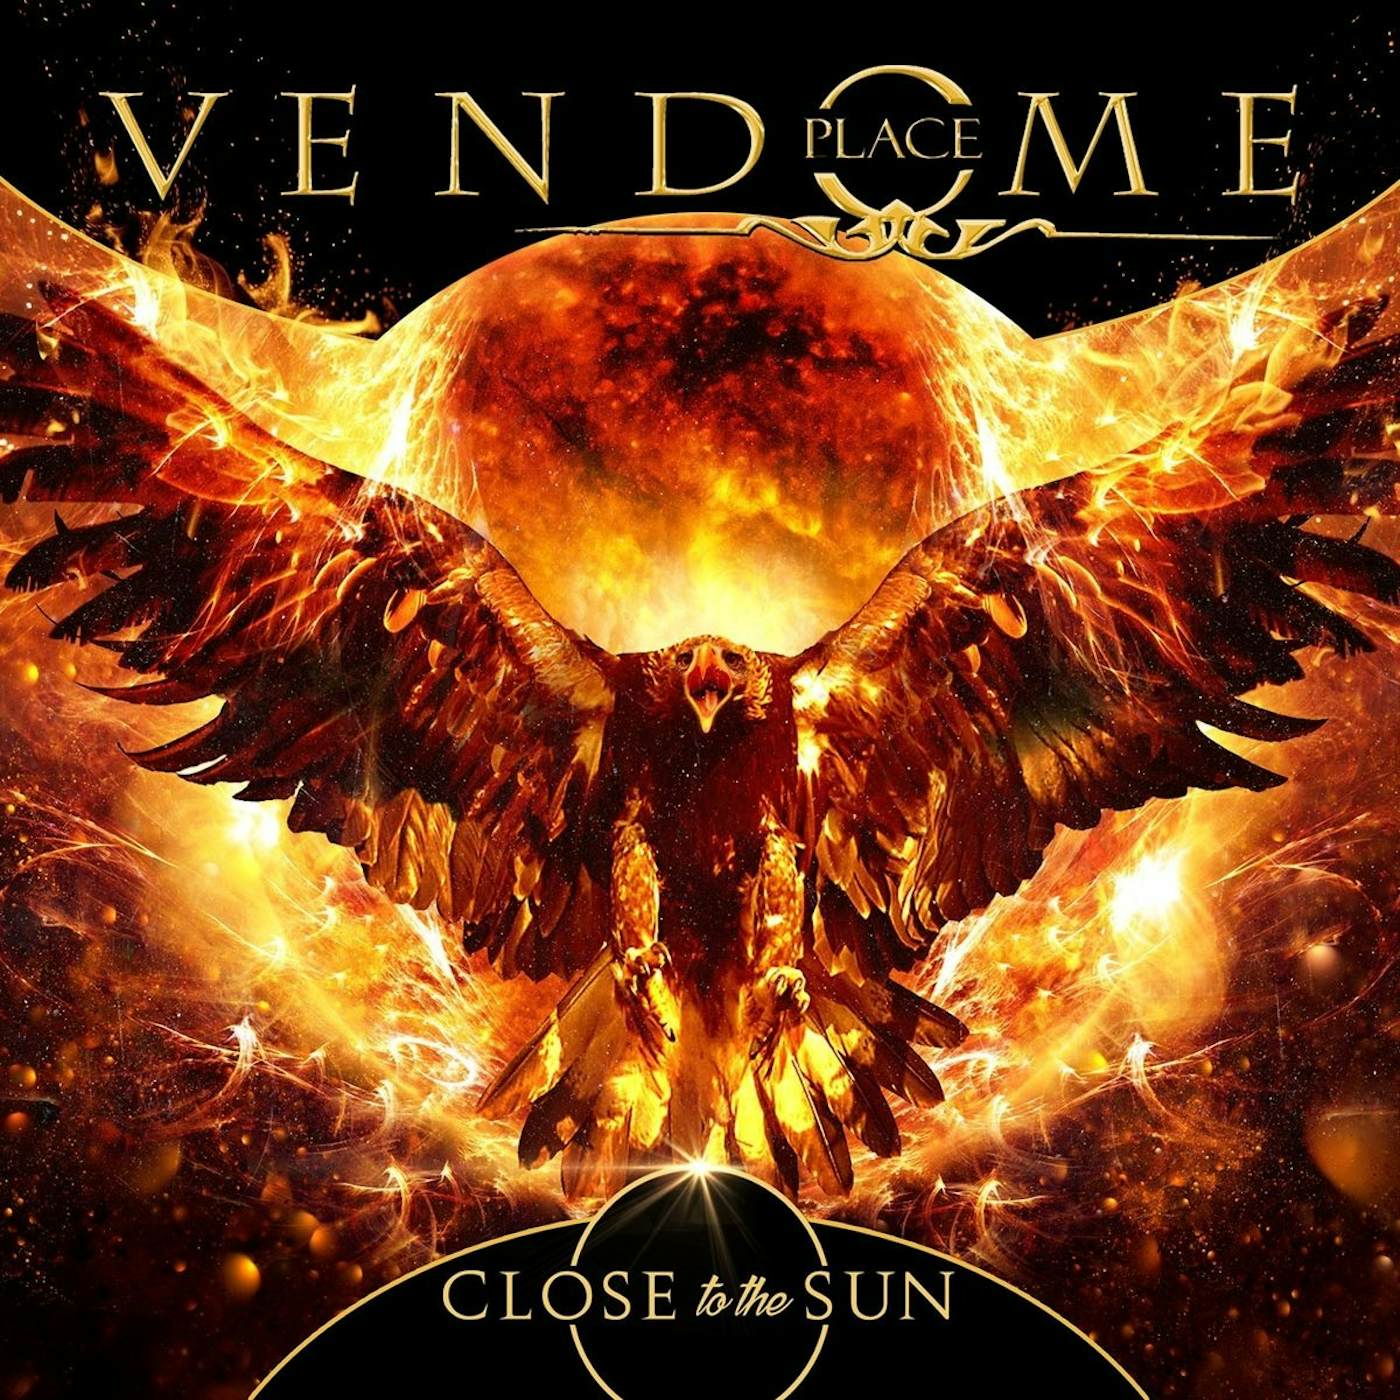 Place Vendome Close to the Sun Vinyl Record